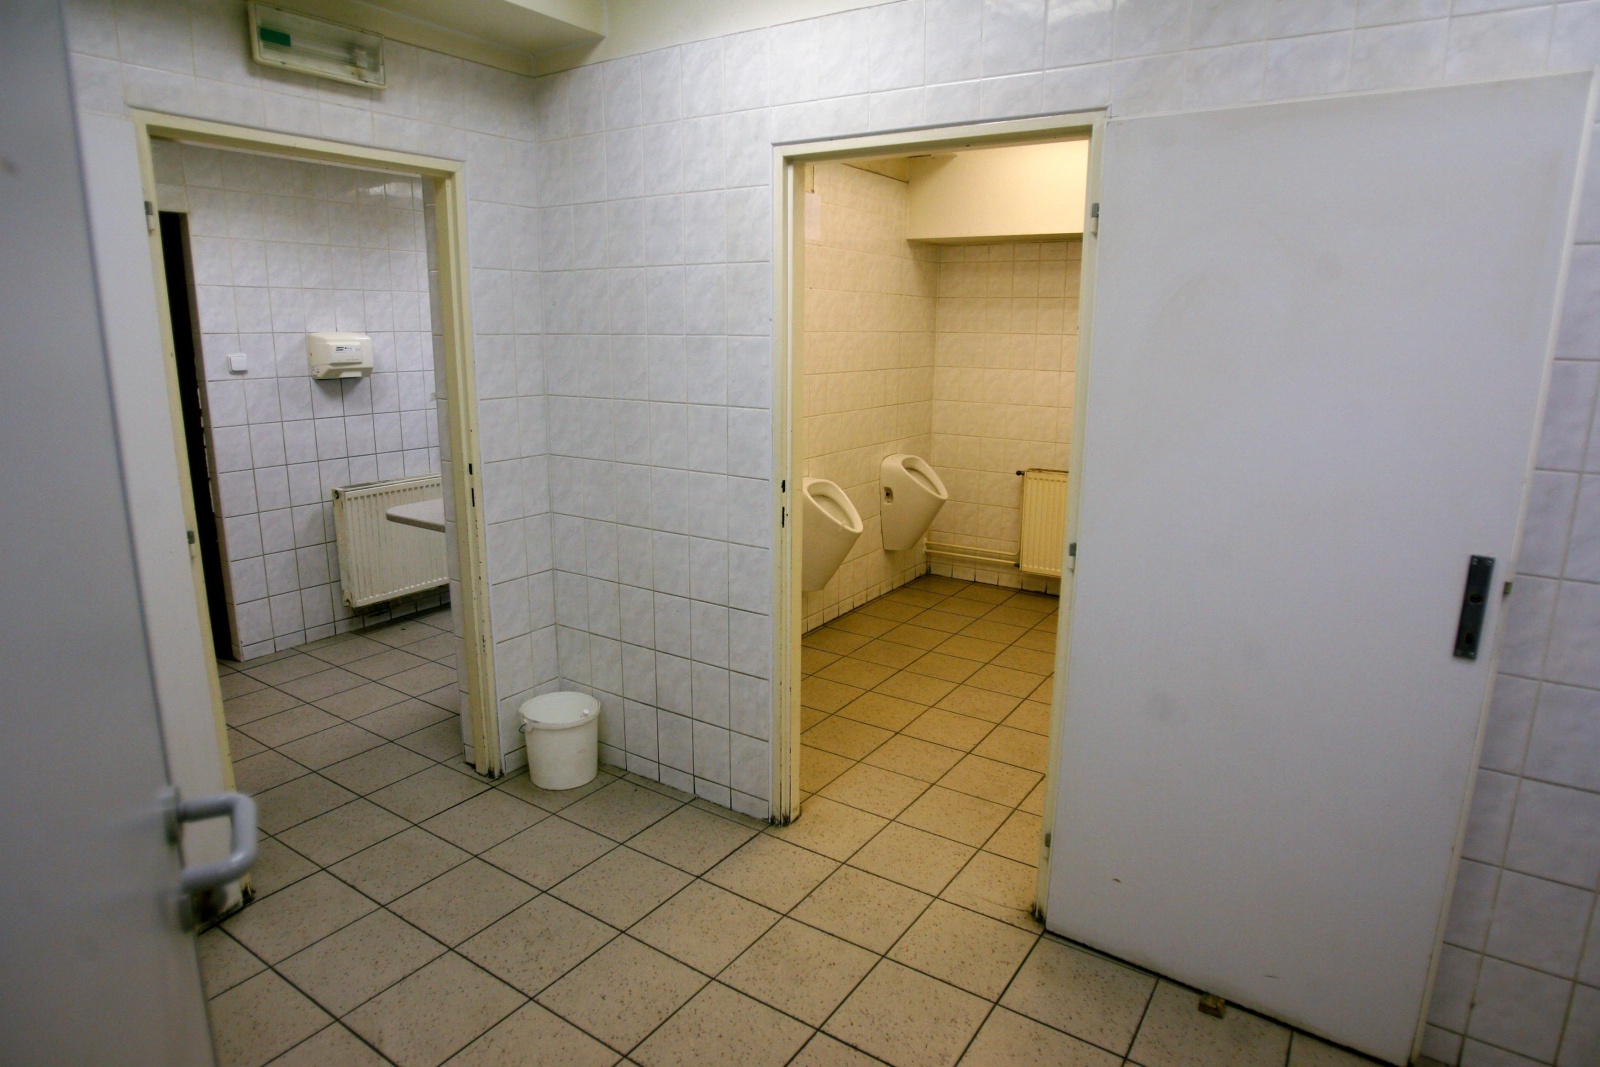 Záchody v metru se opraví, lidé za jejich použití zaplatí dvakrát více -  Deník.cz